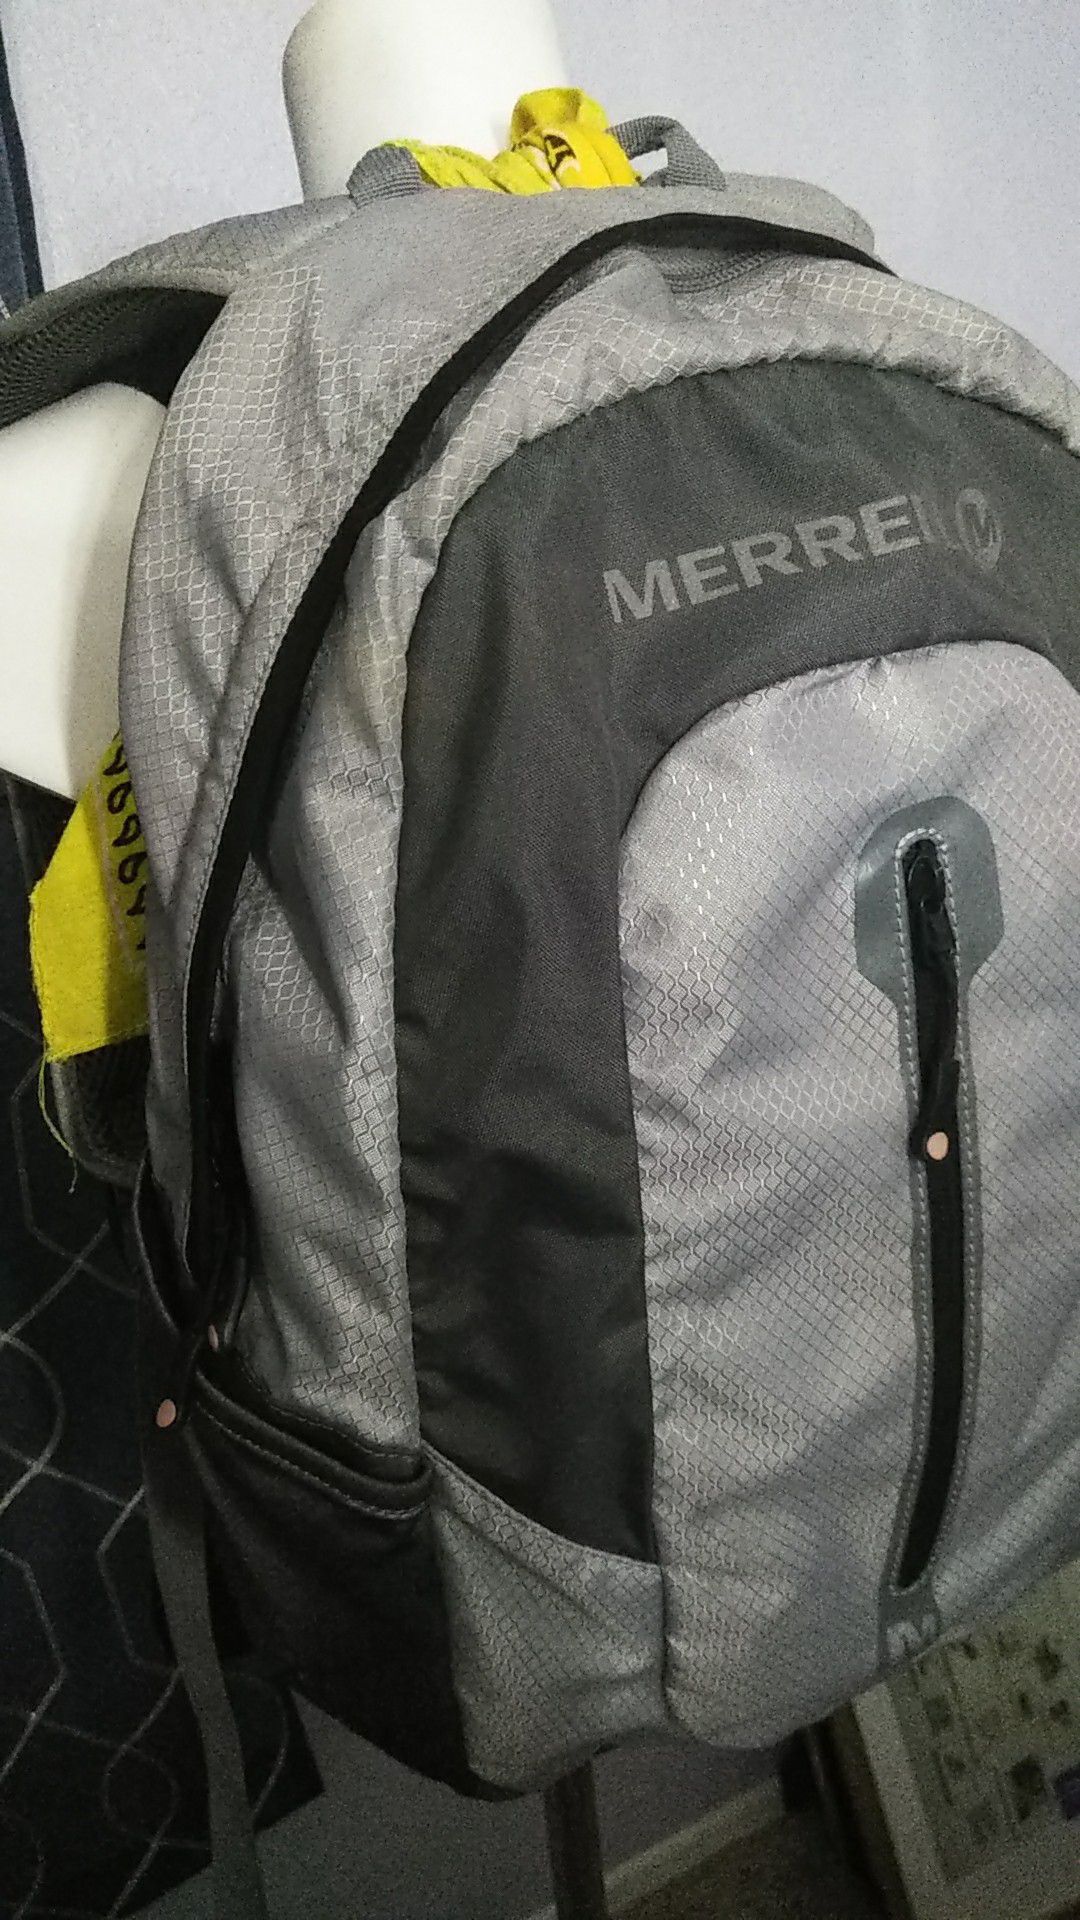 Merrel back pack